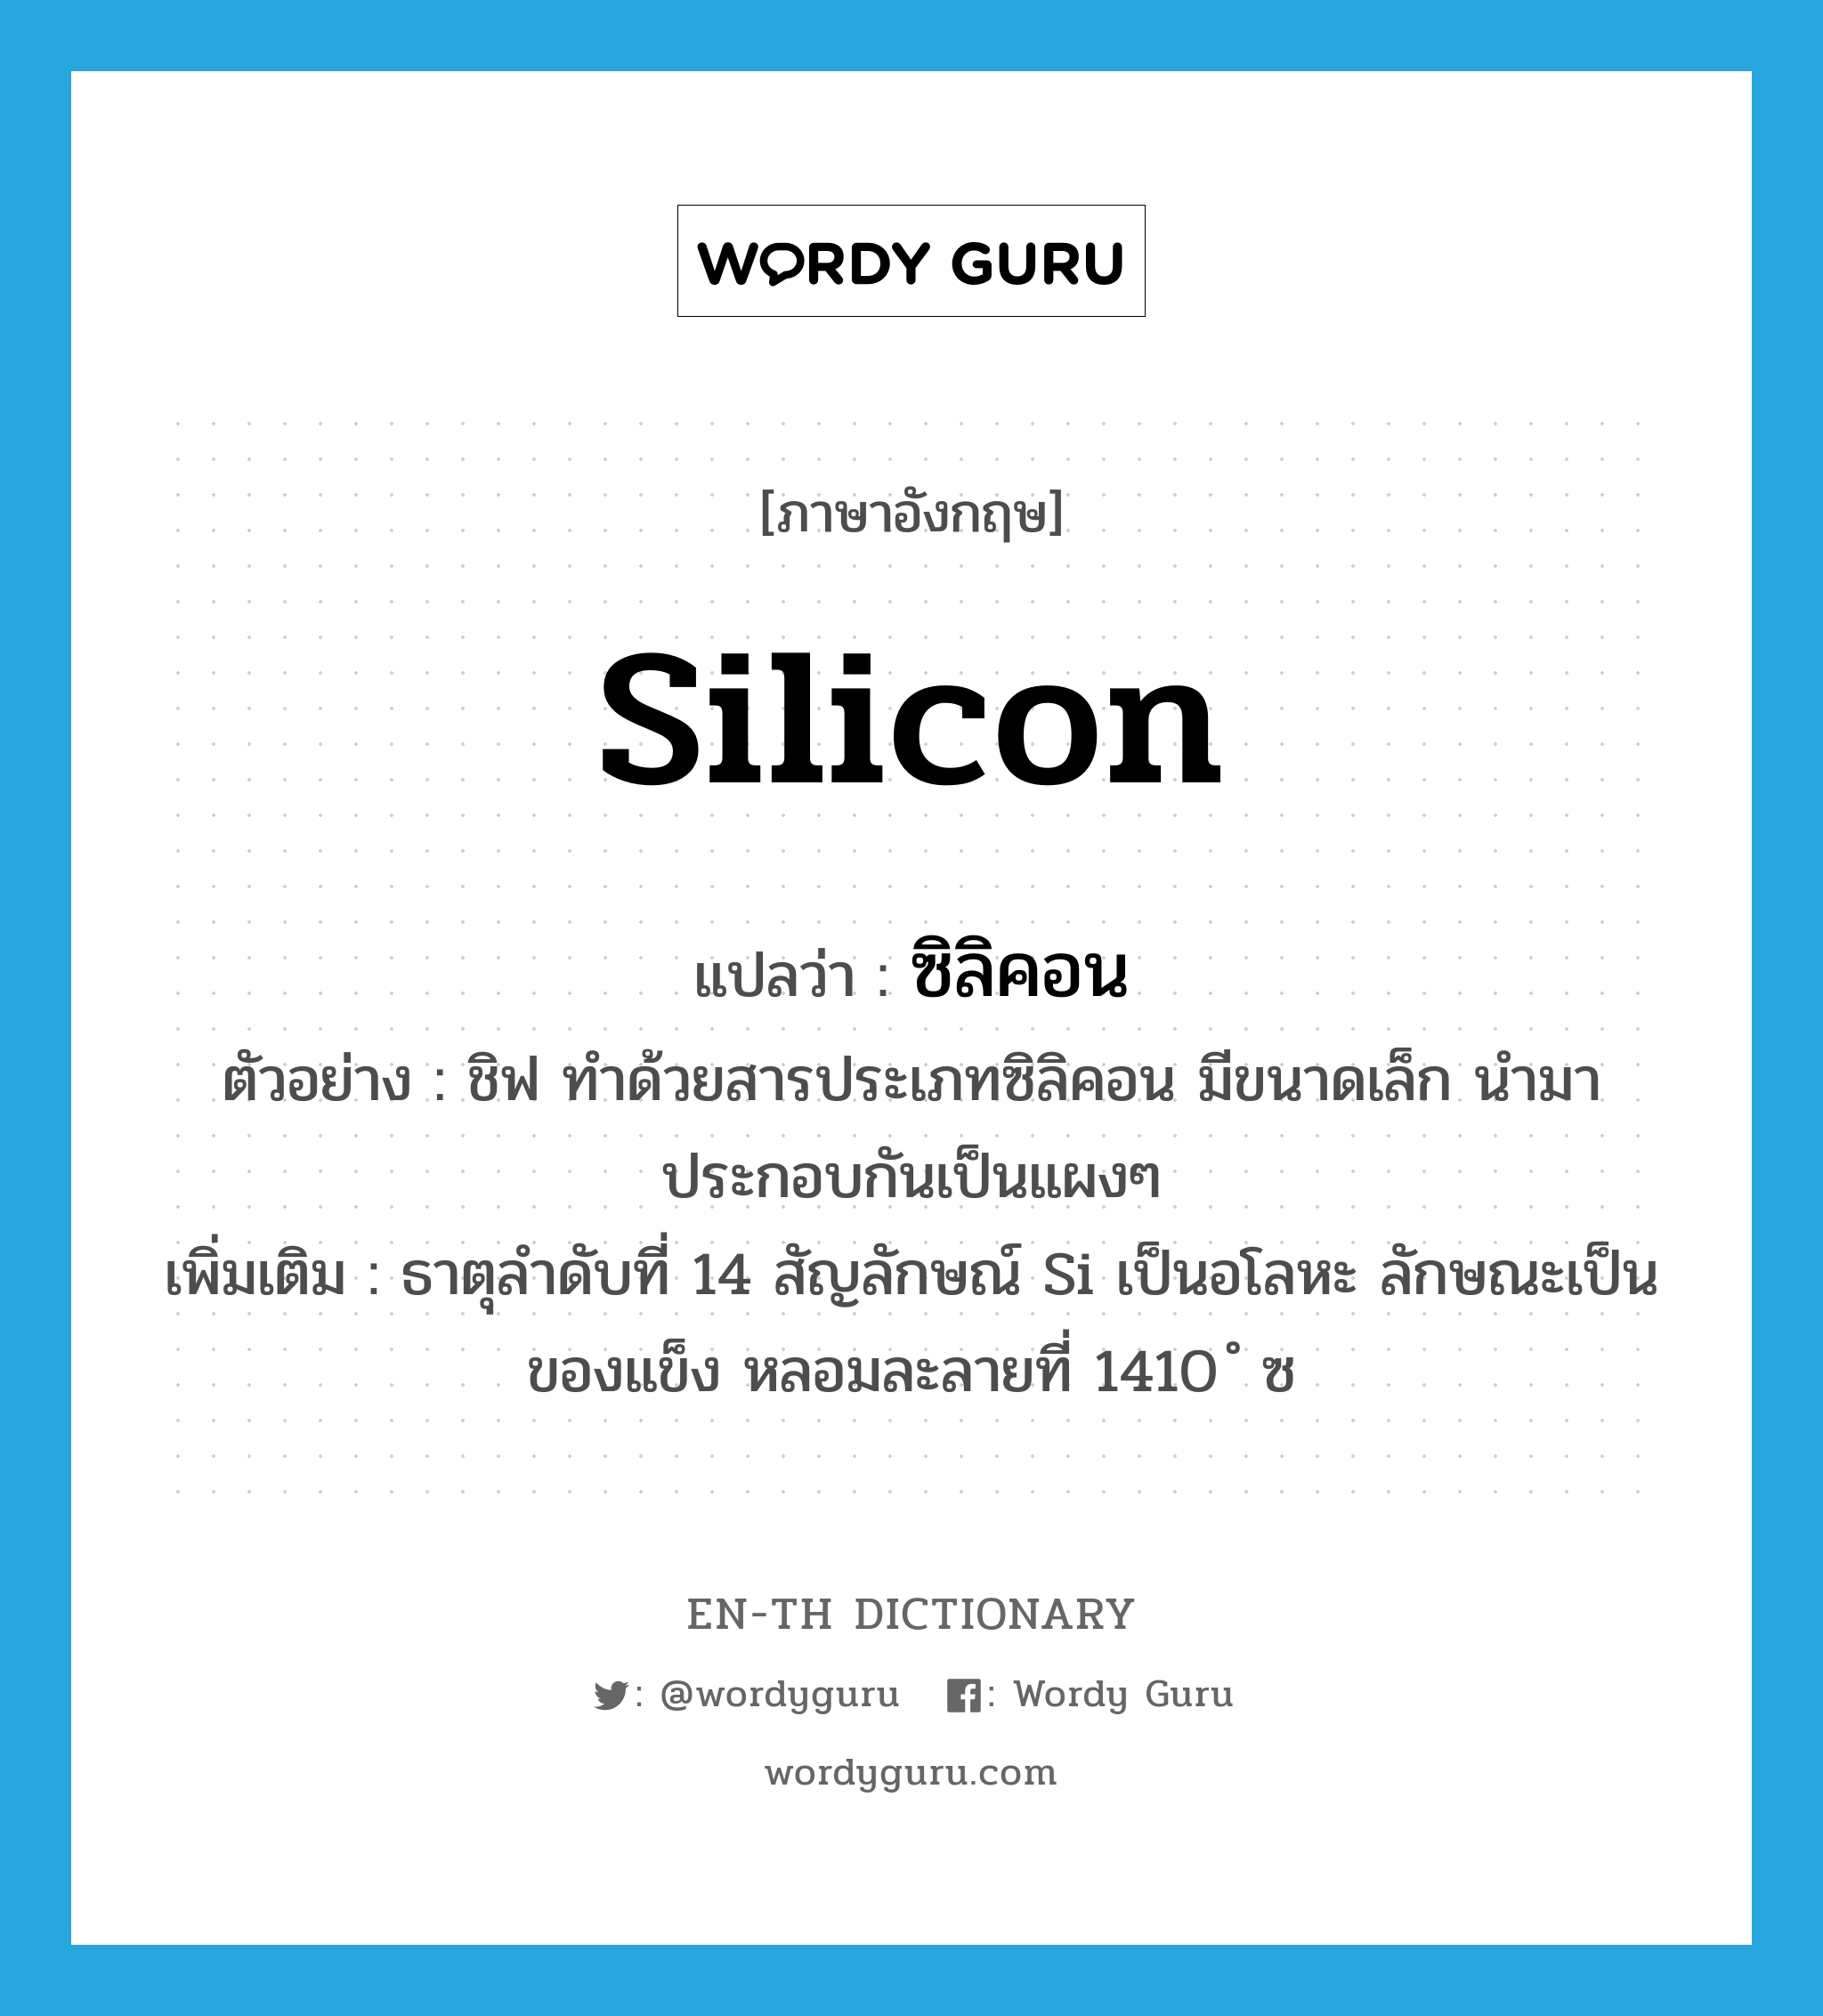 ซิลิคอน ภาษาอังกฤษ?, คำศัพท์ภาษาอังกฤษ ซิลิคอน แปลว่า silicon ประเภท N ตัวอย่าง ชิฟ ทำด้วยสารประเภทซิลิคอน มีขนาดเล็ก นำมาประกอบกันเป็นแผงๆ เพิ่มเติม ธาตุลำดับที่ 14 สัญลักษณ์ Si เป็นอโลหะ ลักษณะเป็นของแข็ง หลอมละลายที่ 1410 ํ ซ หมวด N